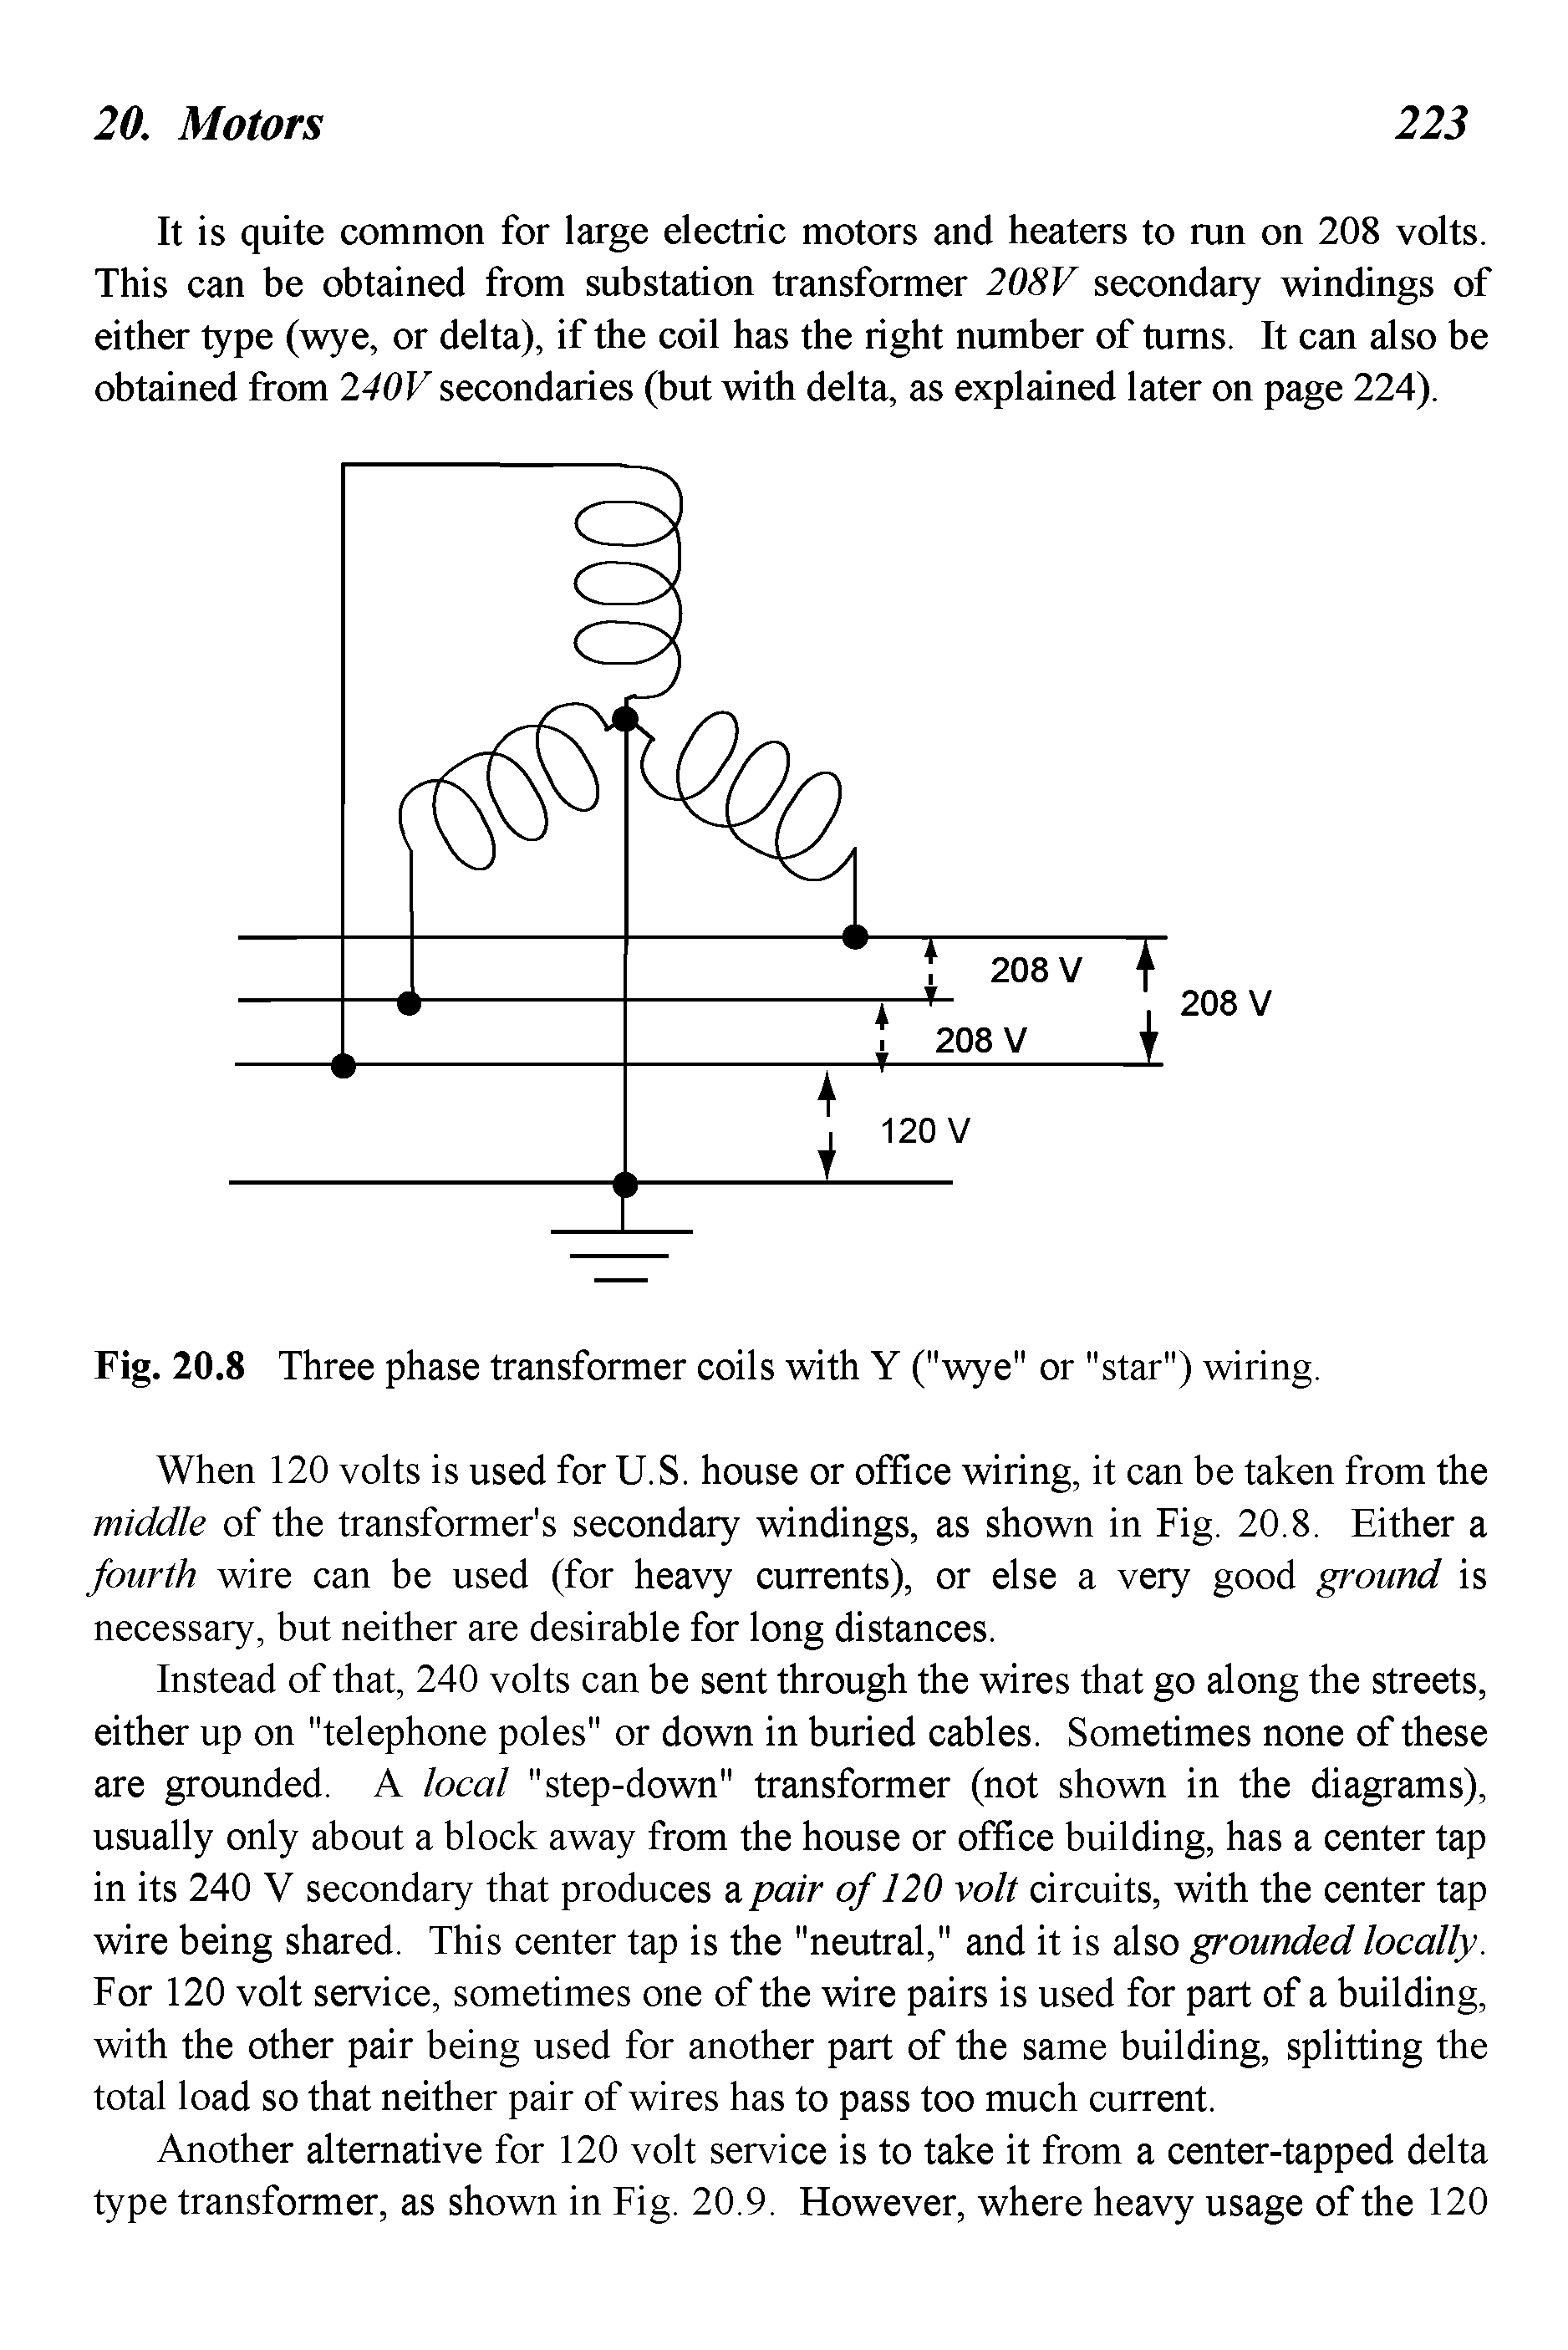 Fig. 20.8 Three phase transformer coils with Y ("wye" or "star") wiring.